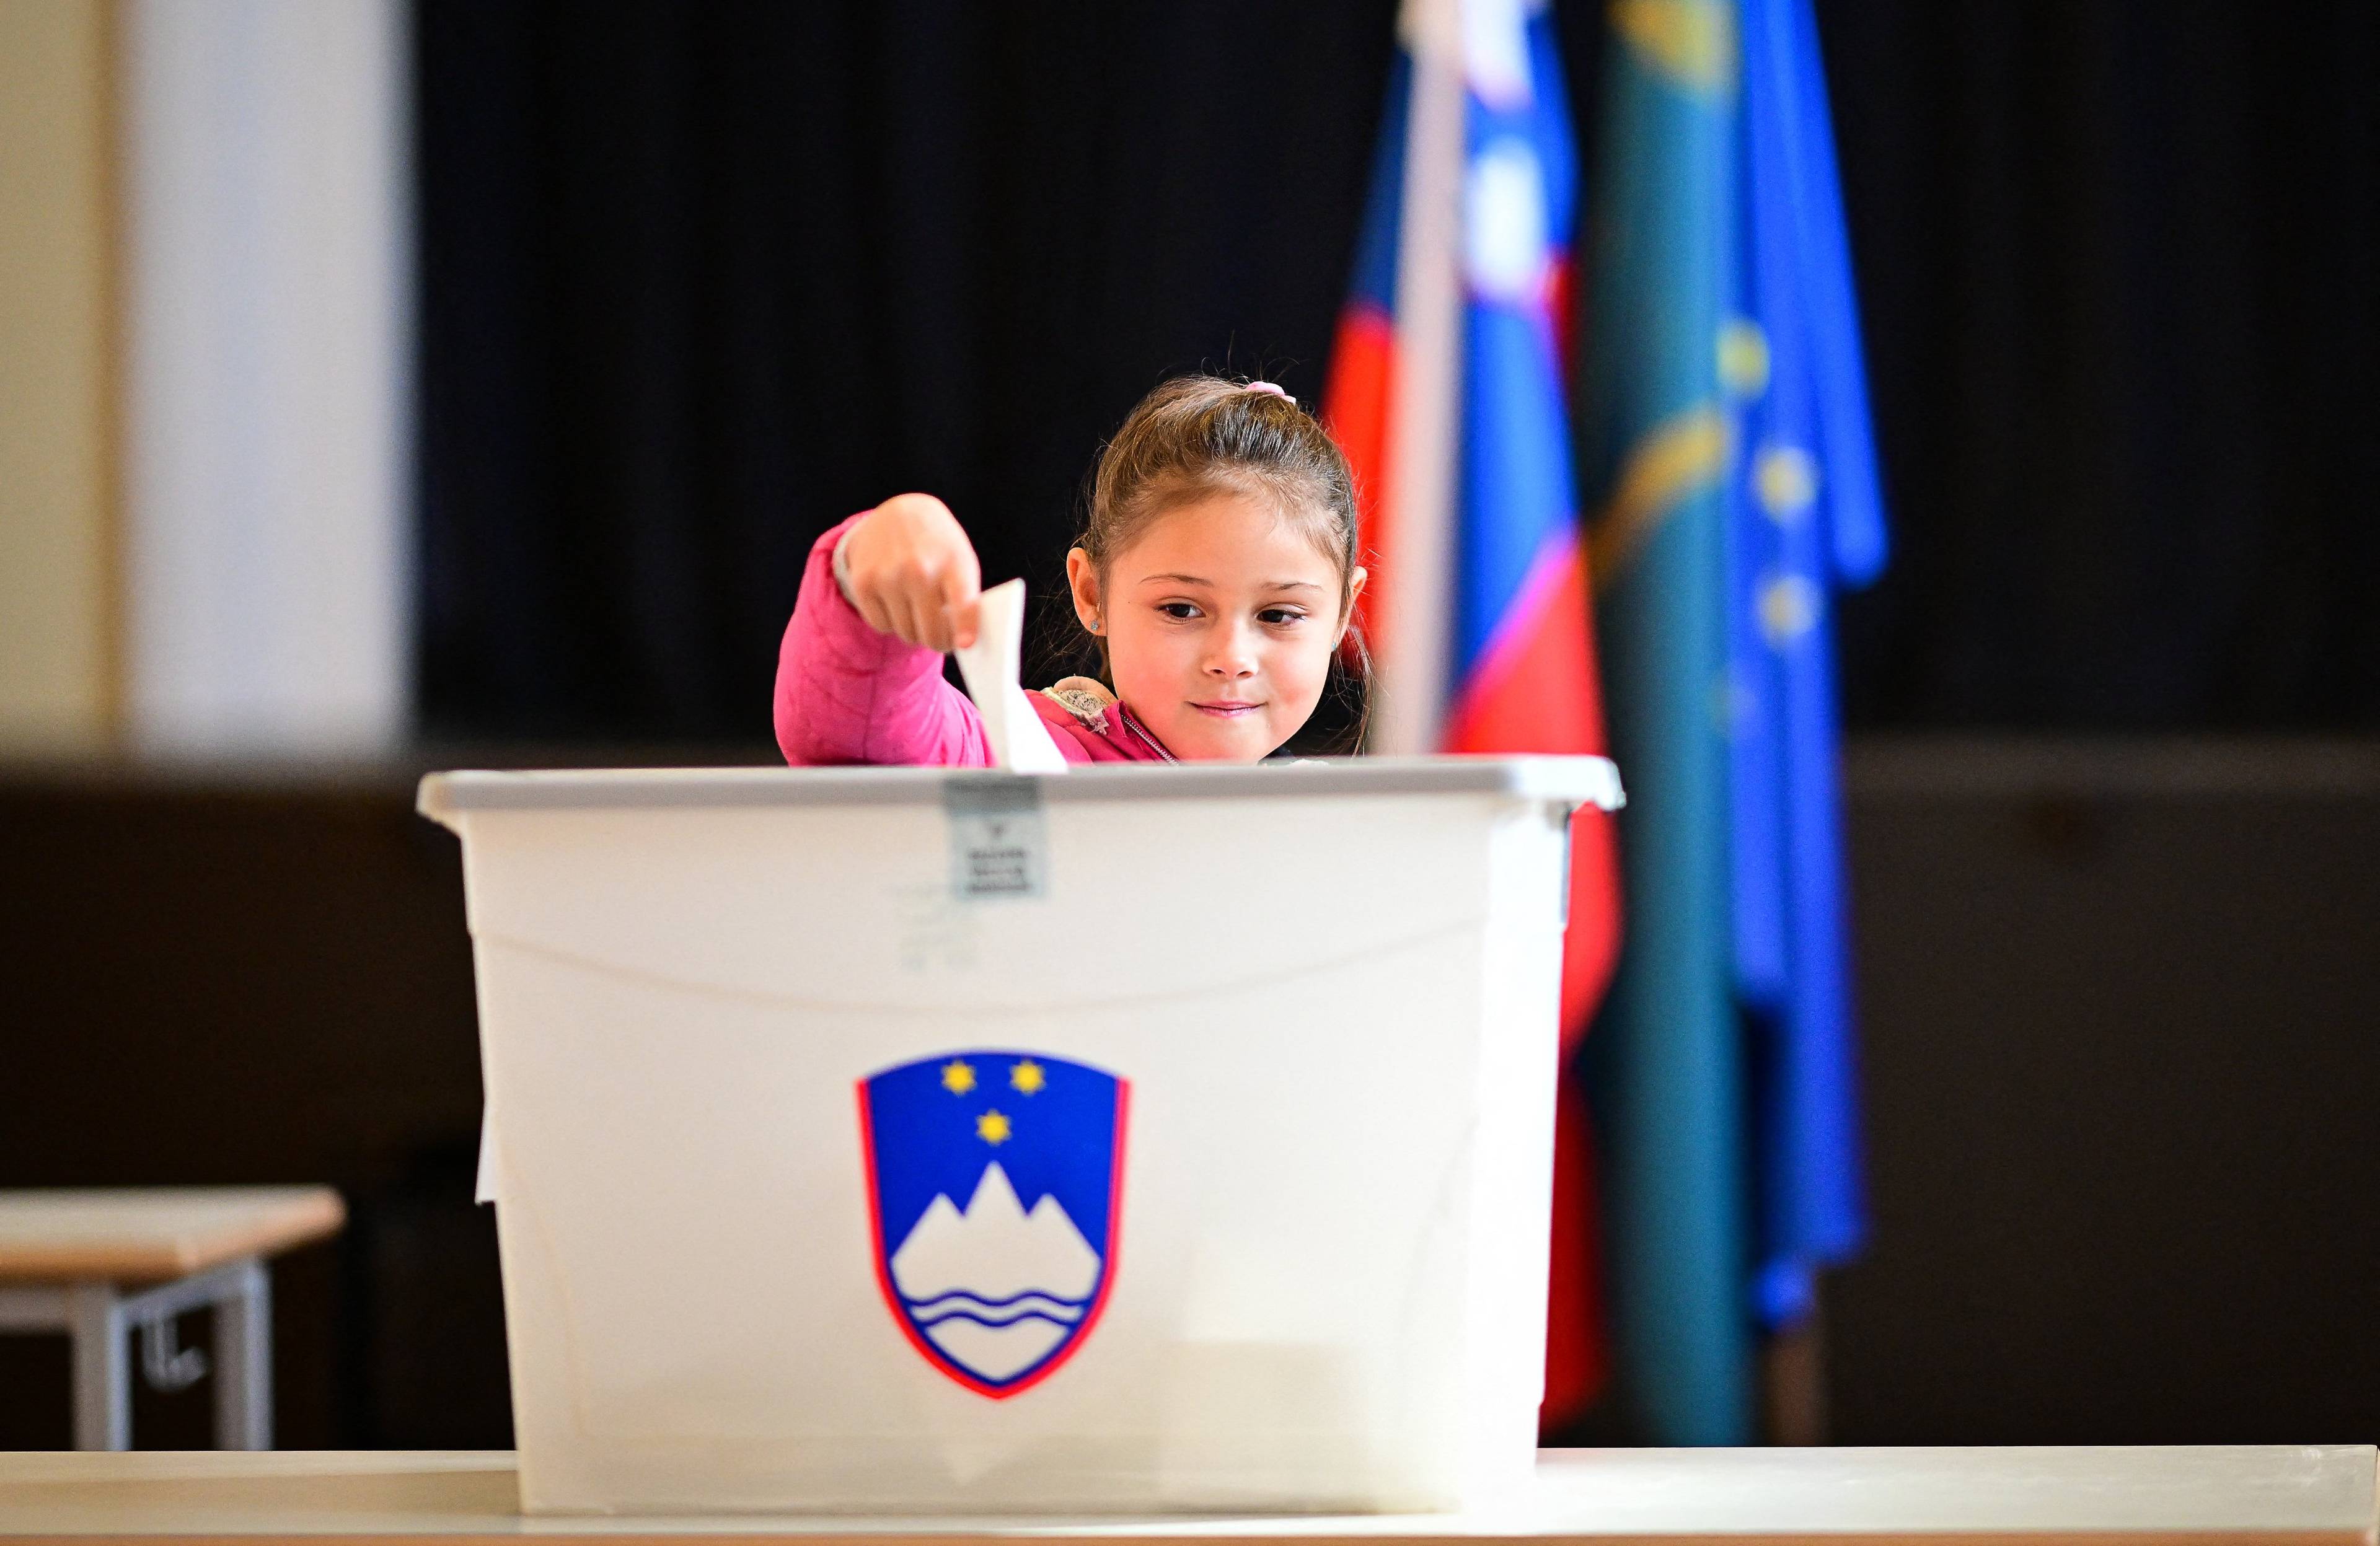 Młoda dziewczynka wrzuca głos do urny wyborczej podczas wyborów w Słowenii